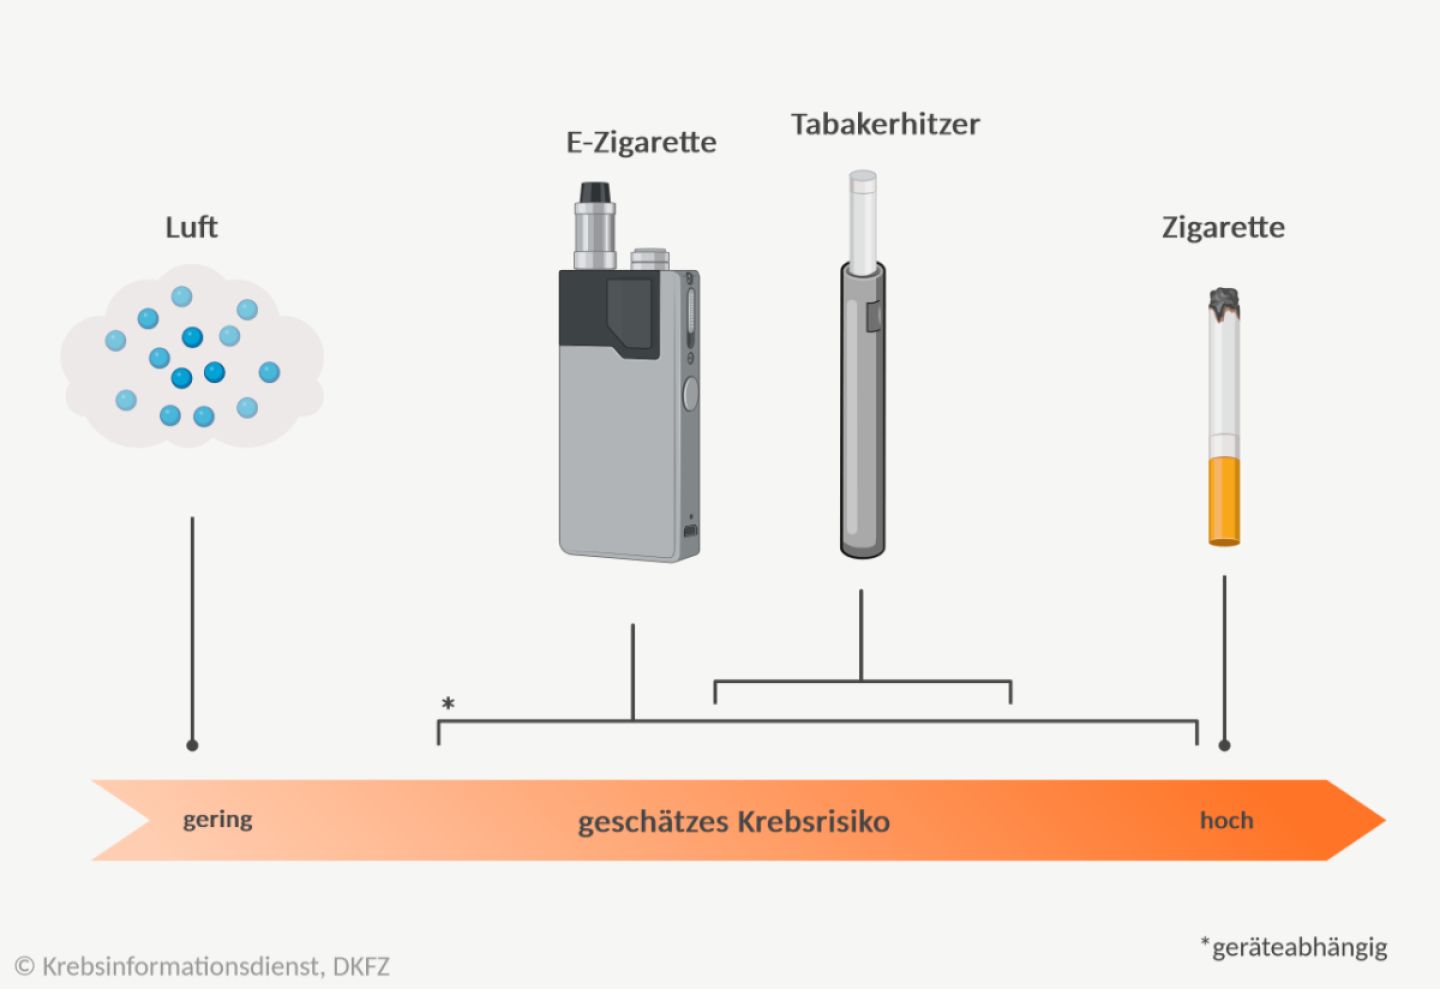 Grafische Darstellung des geschätzten Krebsrisikos von E-Zigaretten, Tabakerhitzern und Zigaretten. Für Zigaretten wird das Risiko am höchsten geschätzt, gefolgt von Tabakerhitzern und E-Zigaretten.